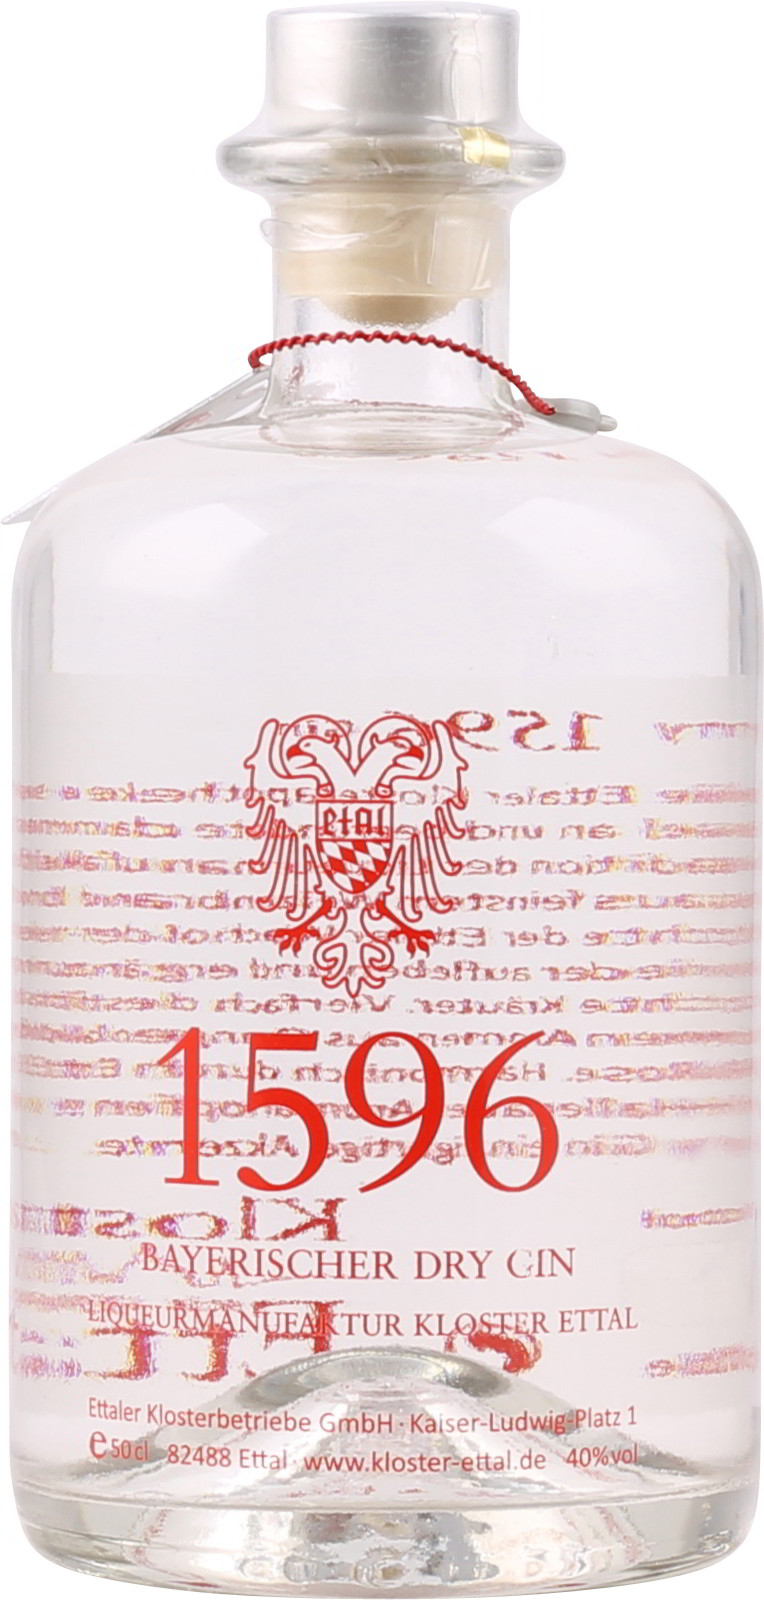 1596 Ettaler ei Dry Vol. % 0,5 Liter Bayerischer 40 Gin